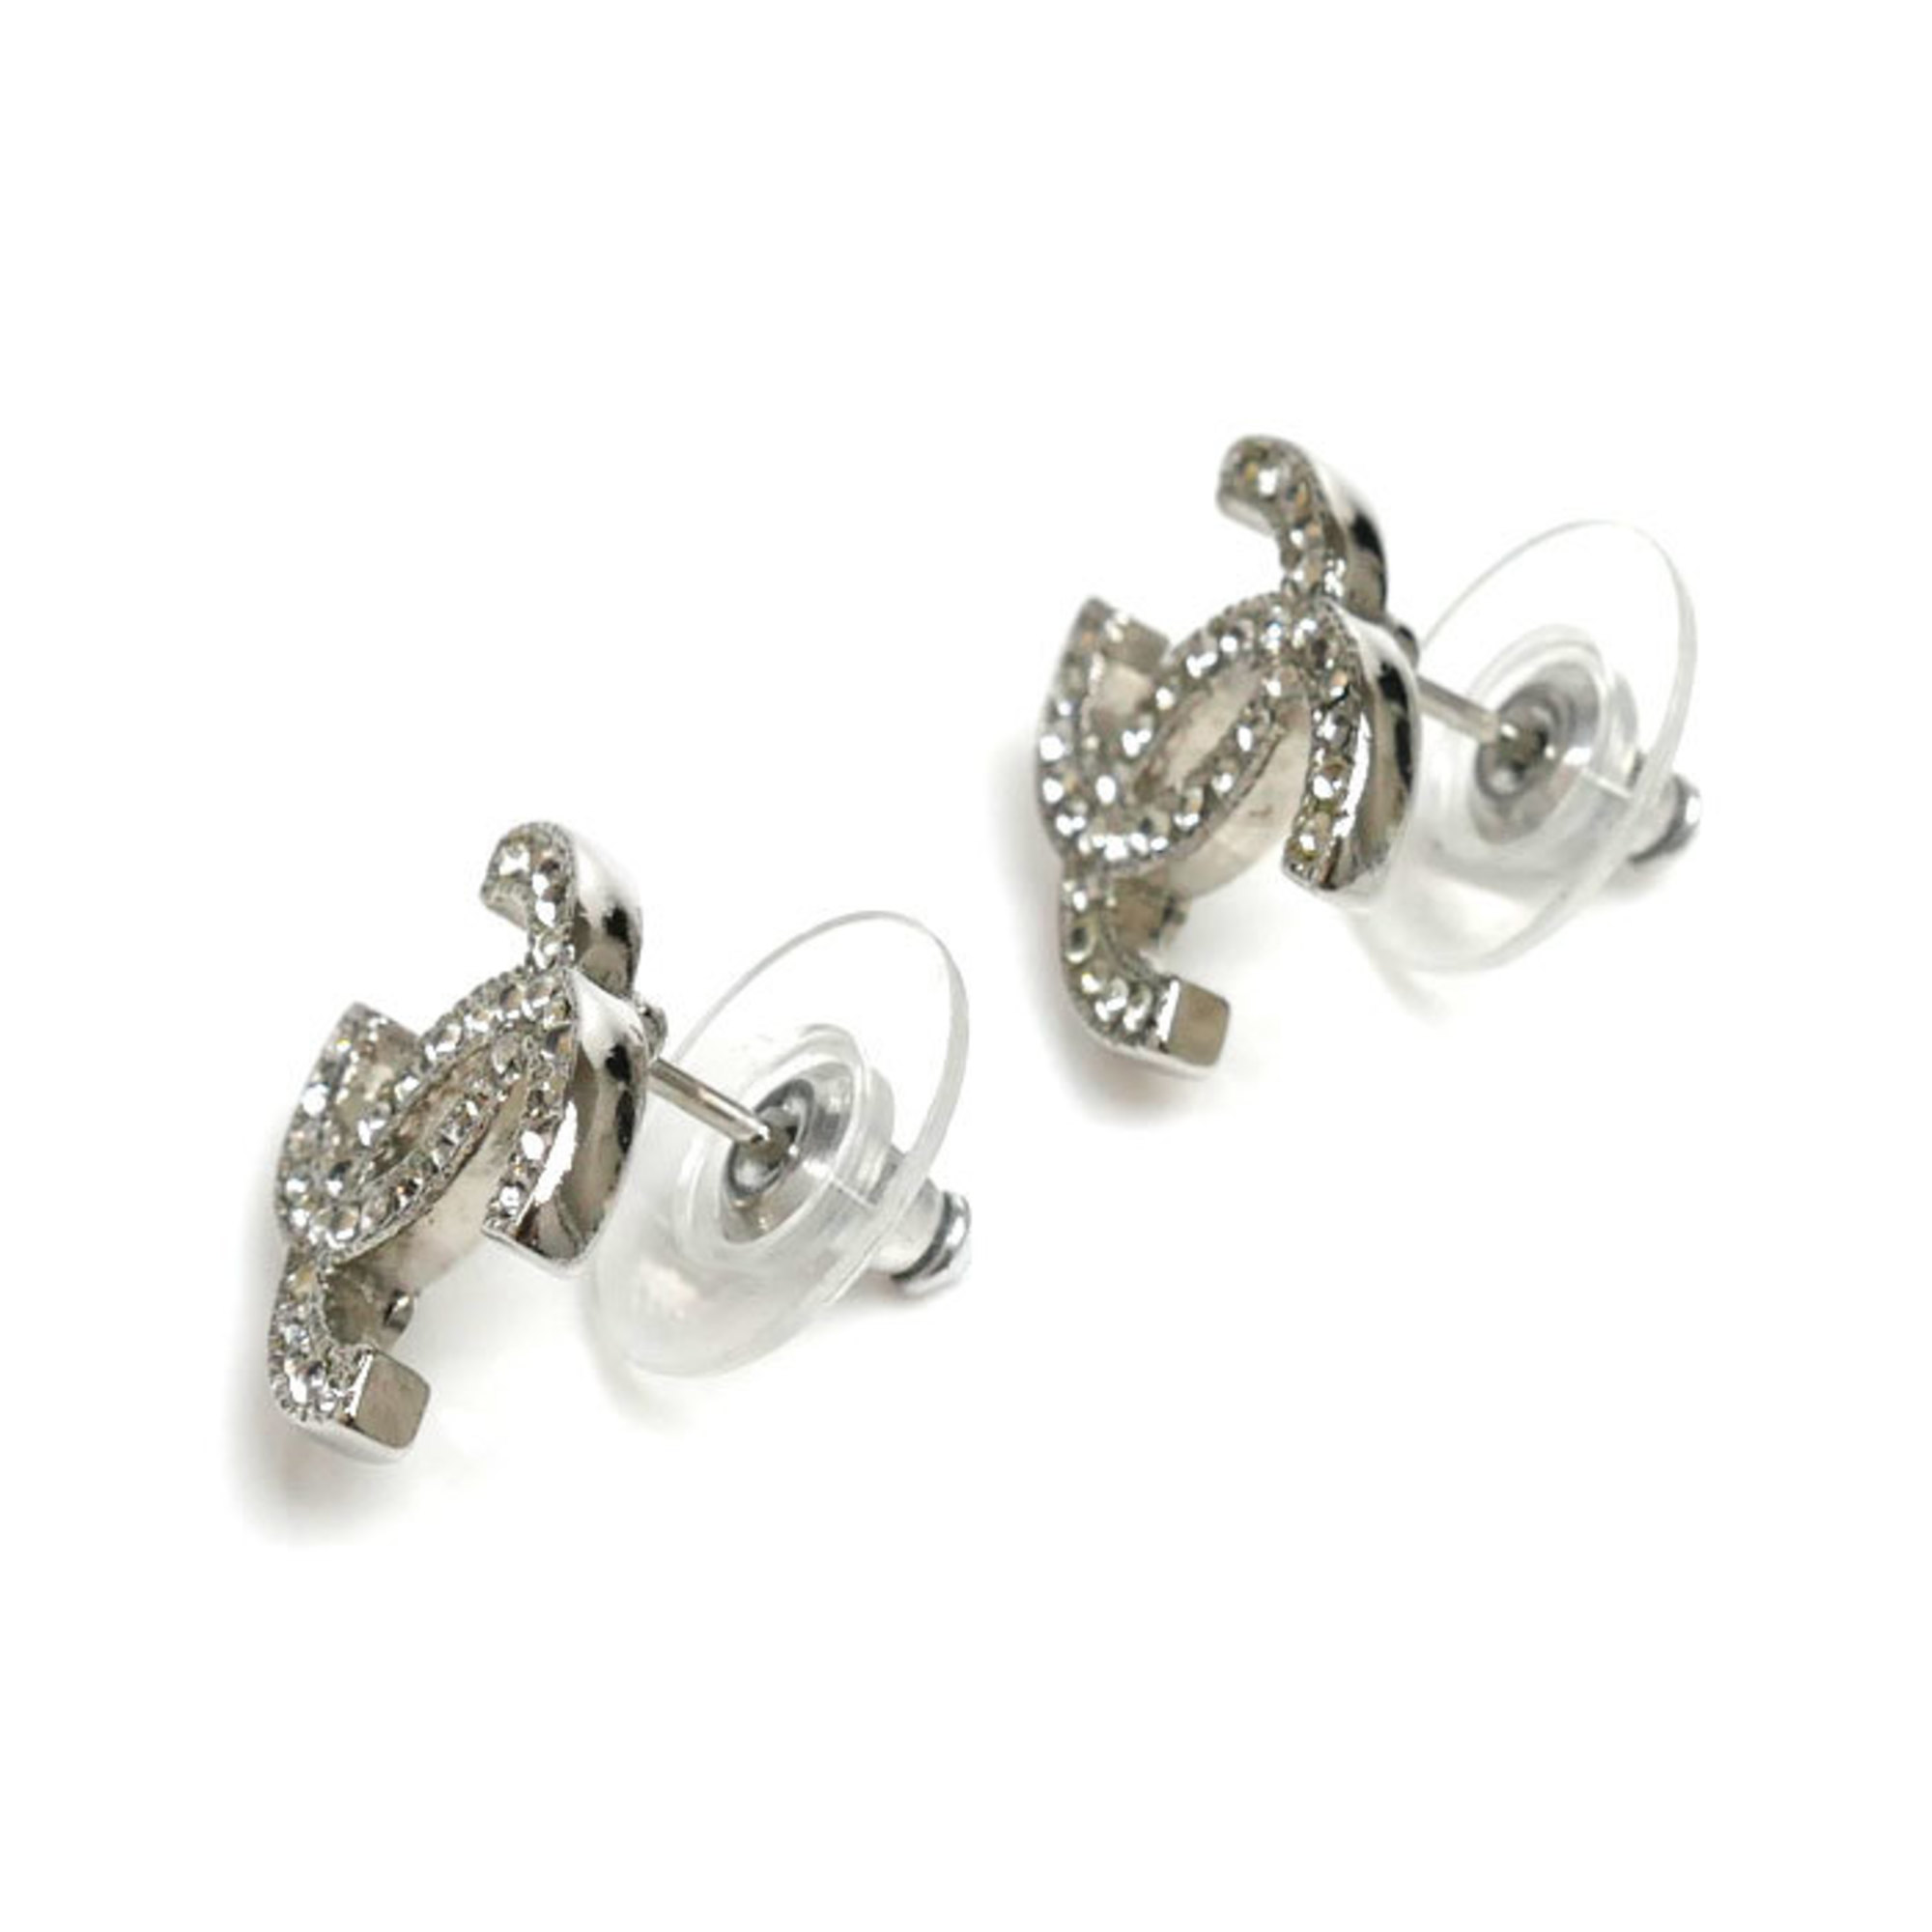 CHANEL Metal Coco Mark Rhinestone Earrings 2.6g for Women